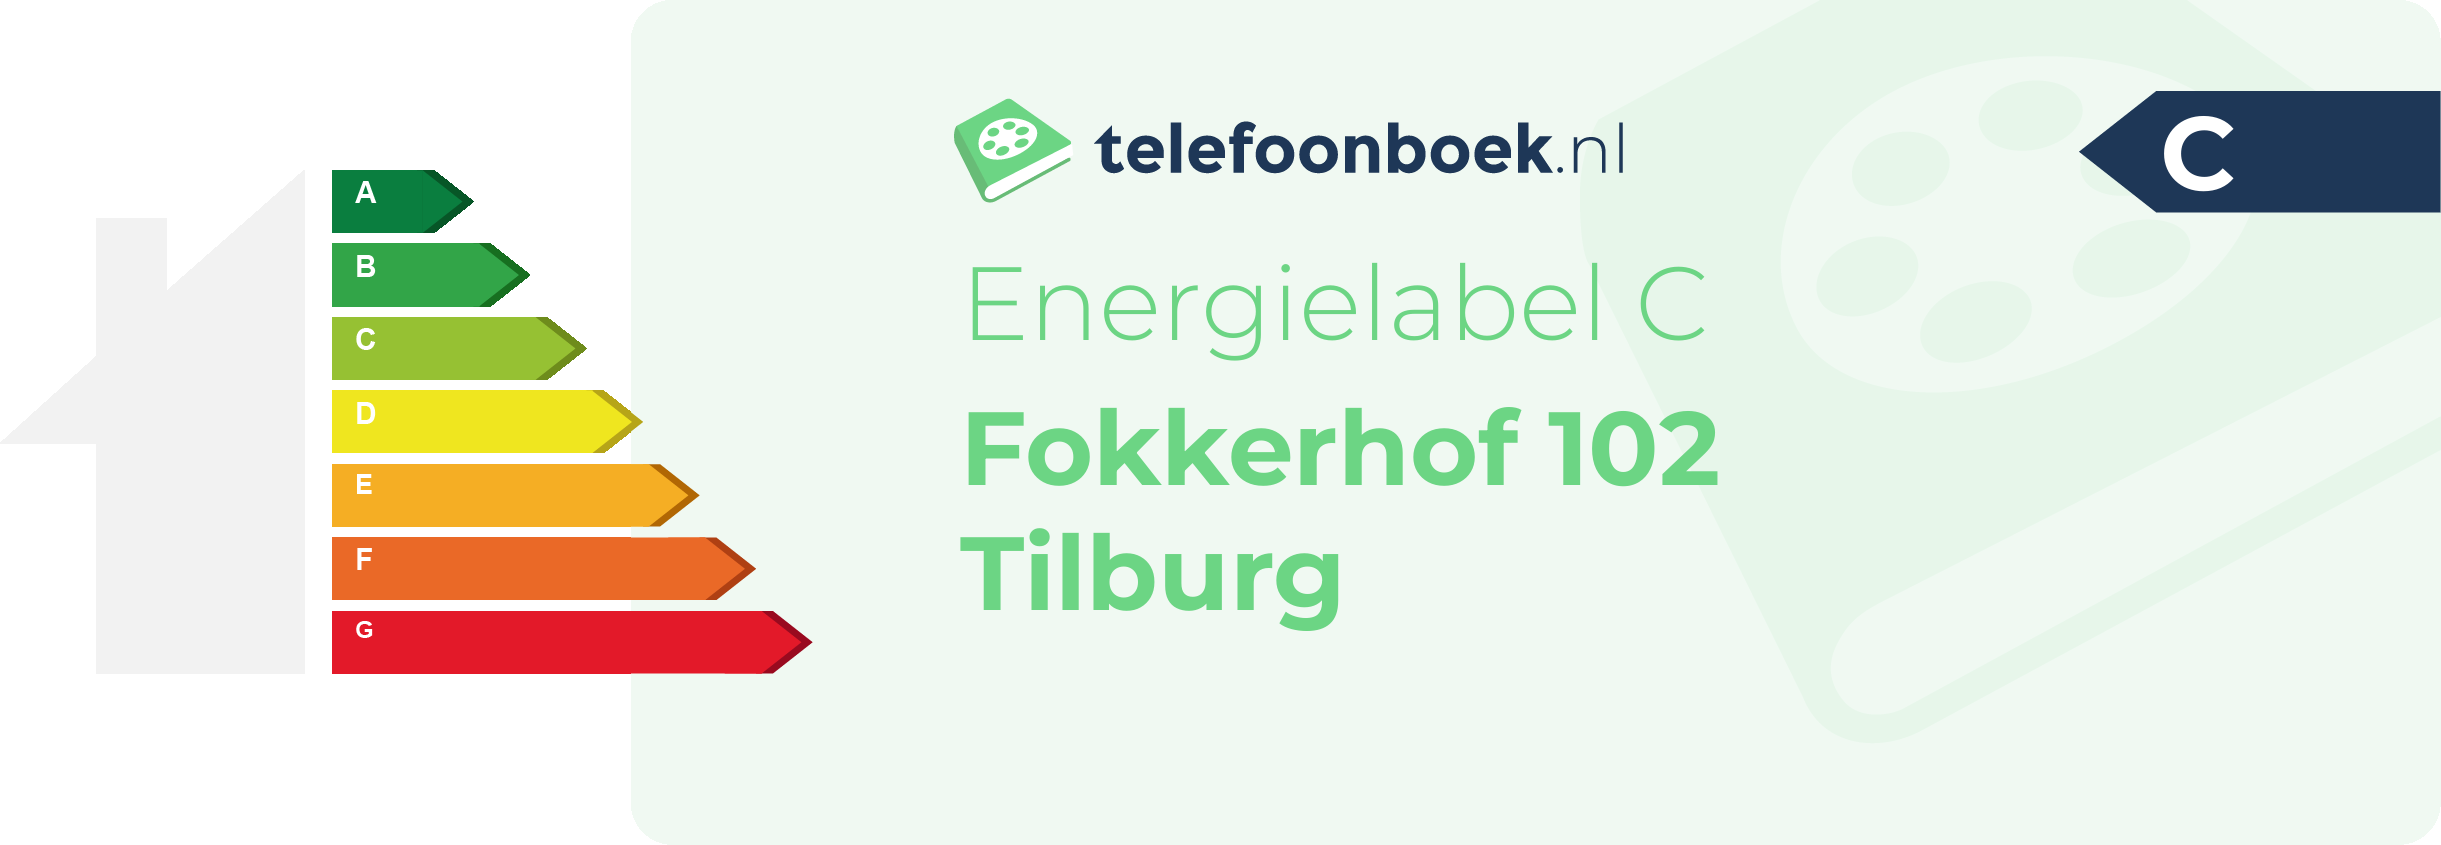 Energielabel Fokkerhof 102 Tilburg